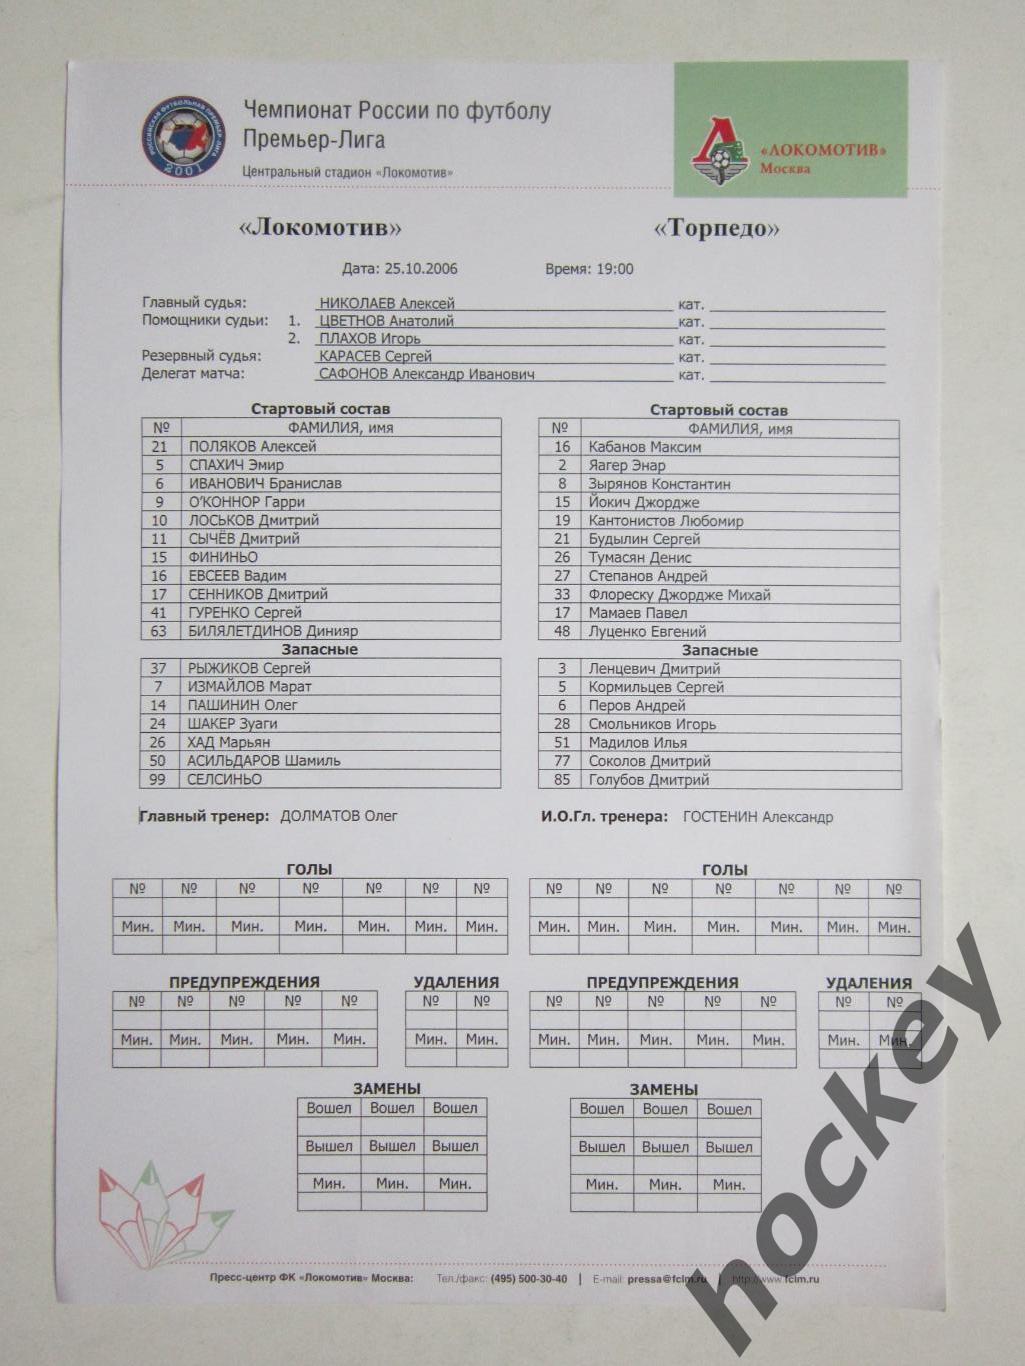 Локомотив Москва - Торпедо Москва 25.10.2006. Стартовый протокол